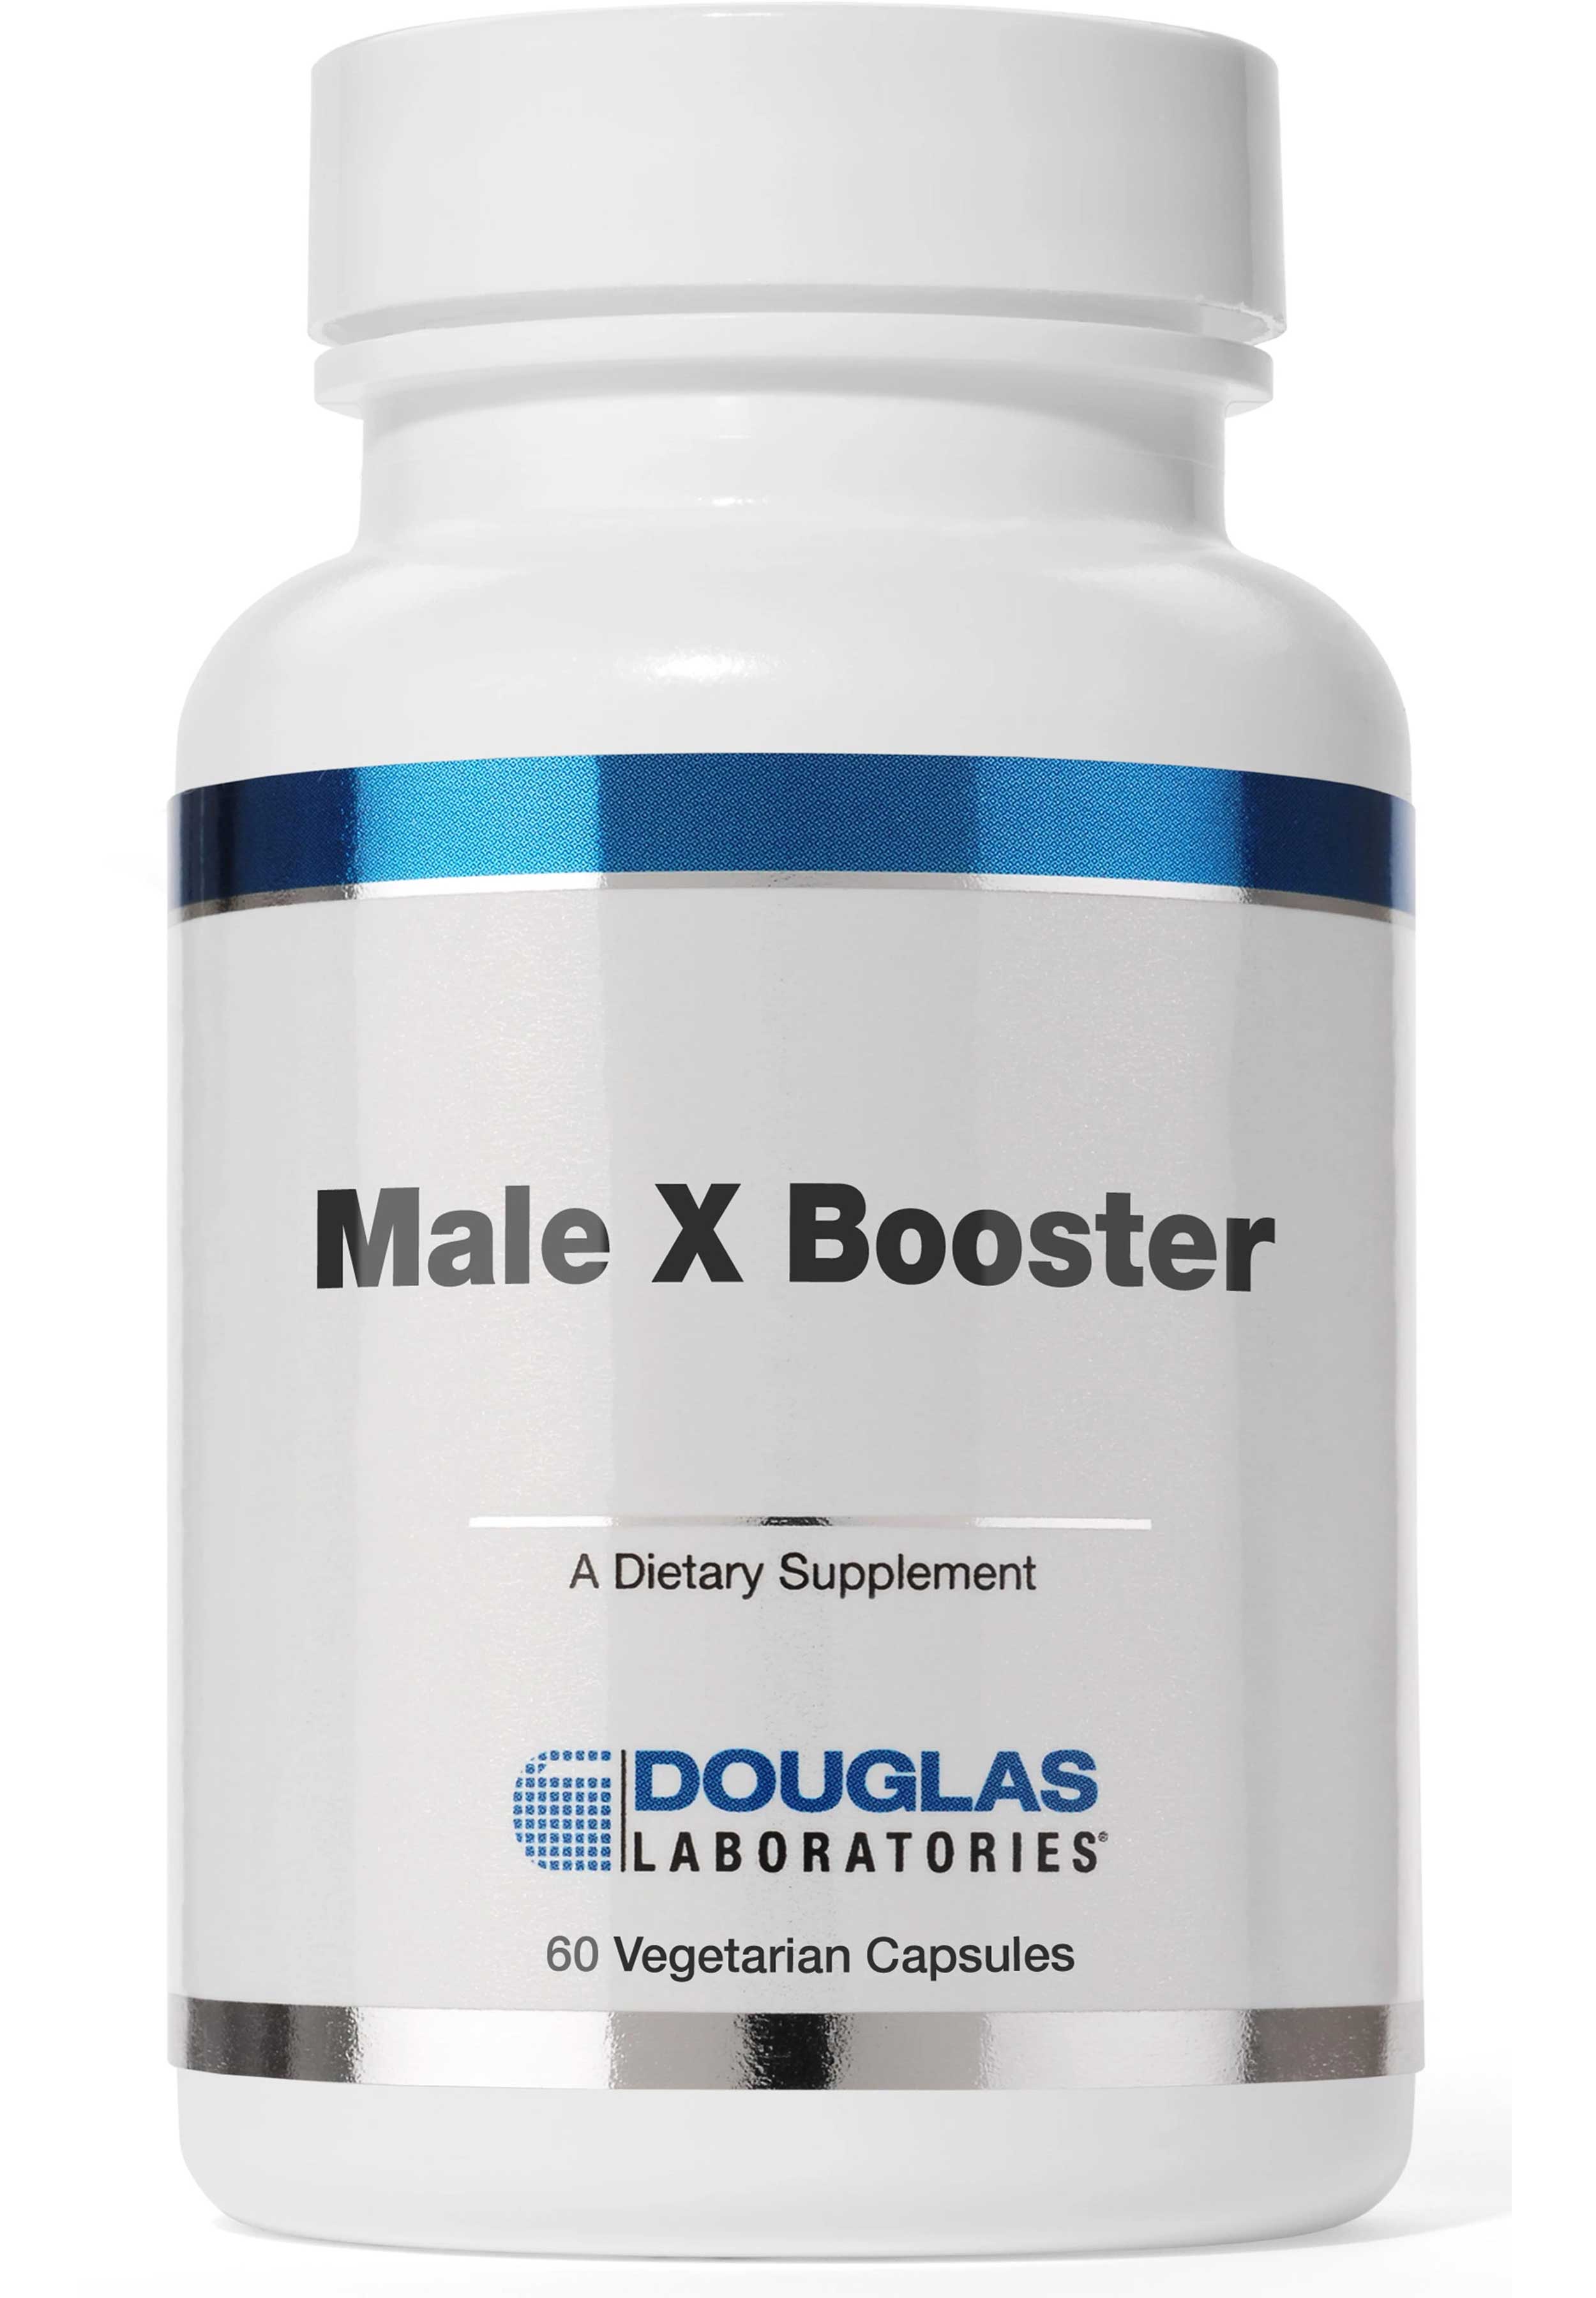 Douglas Laboratories Male X Booster